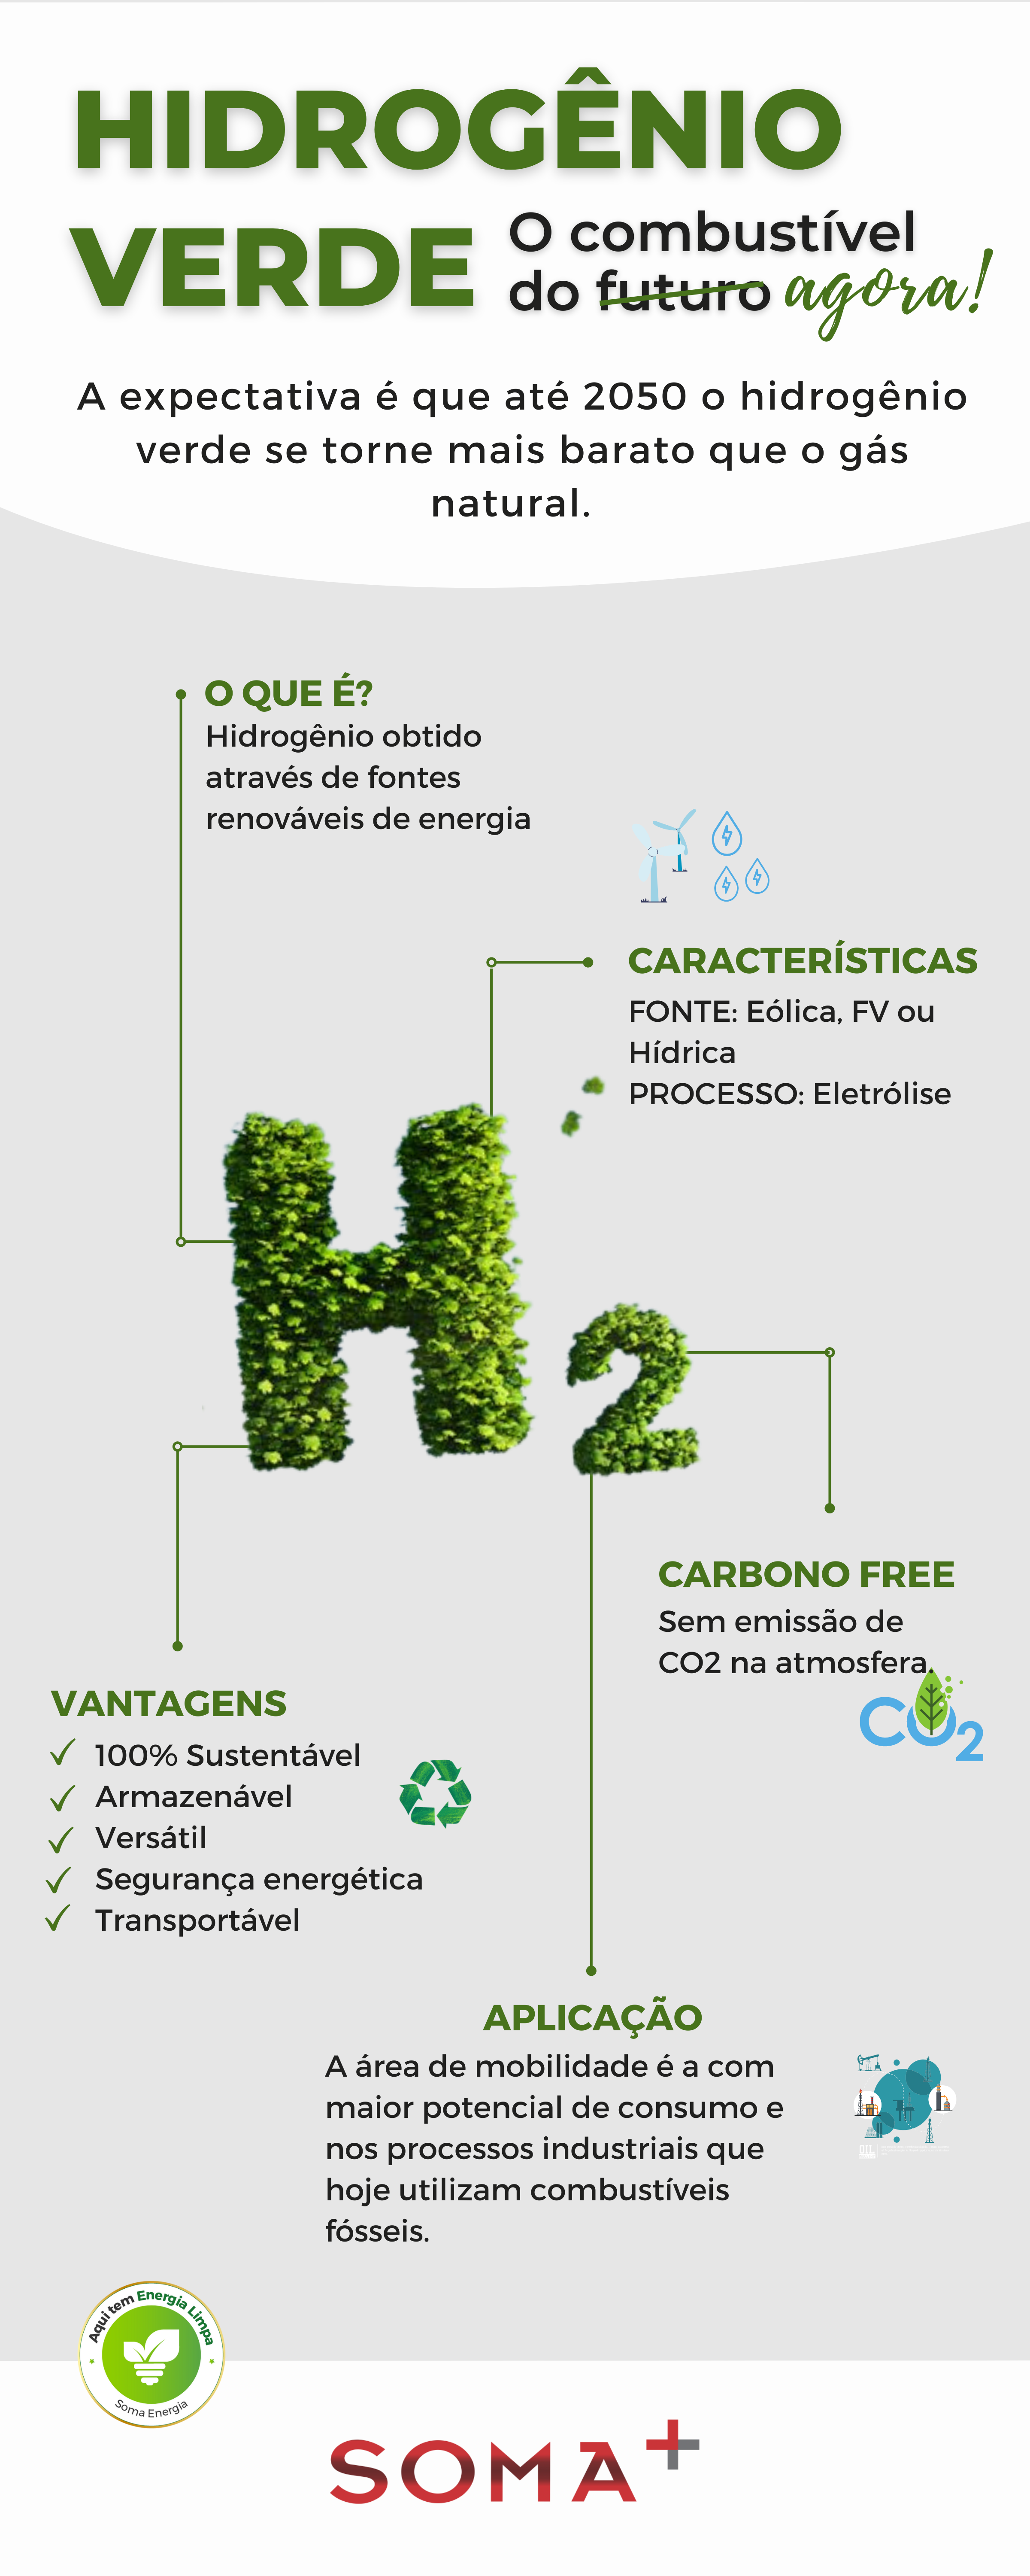 o hidrogênio verde